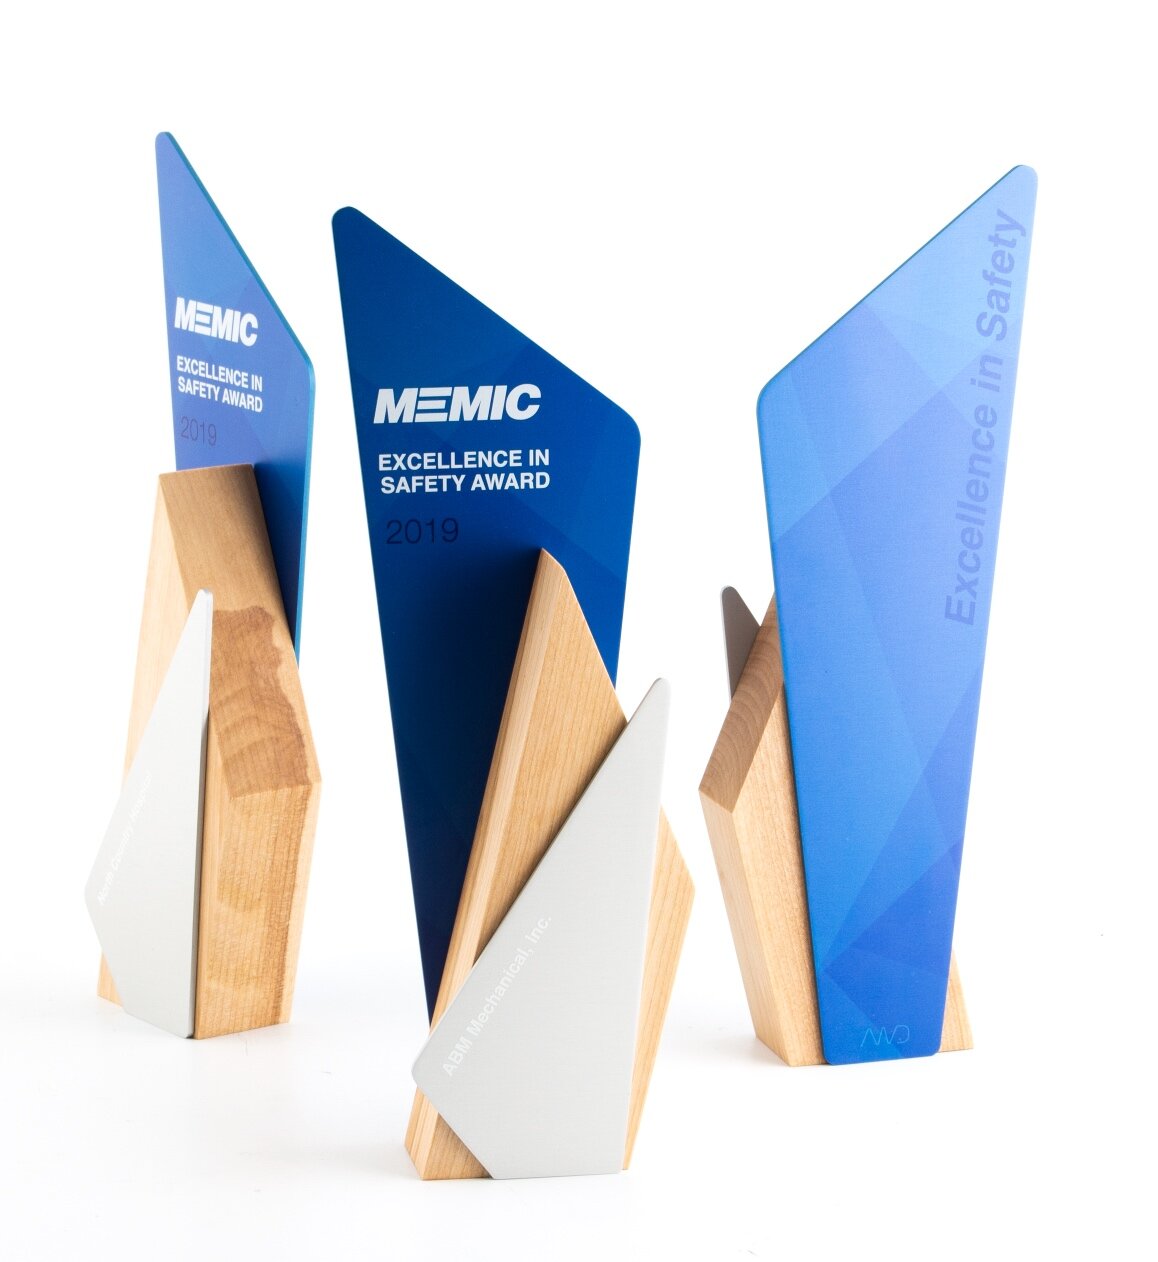 MEMIC custom safety awards modern design 